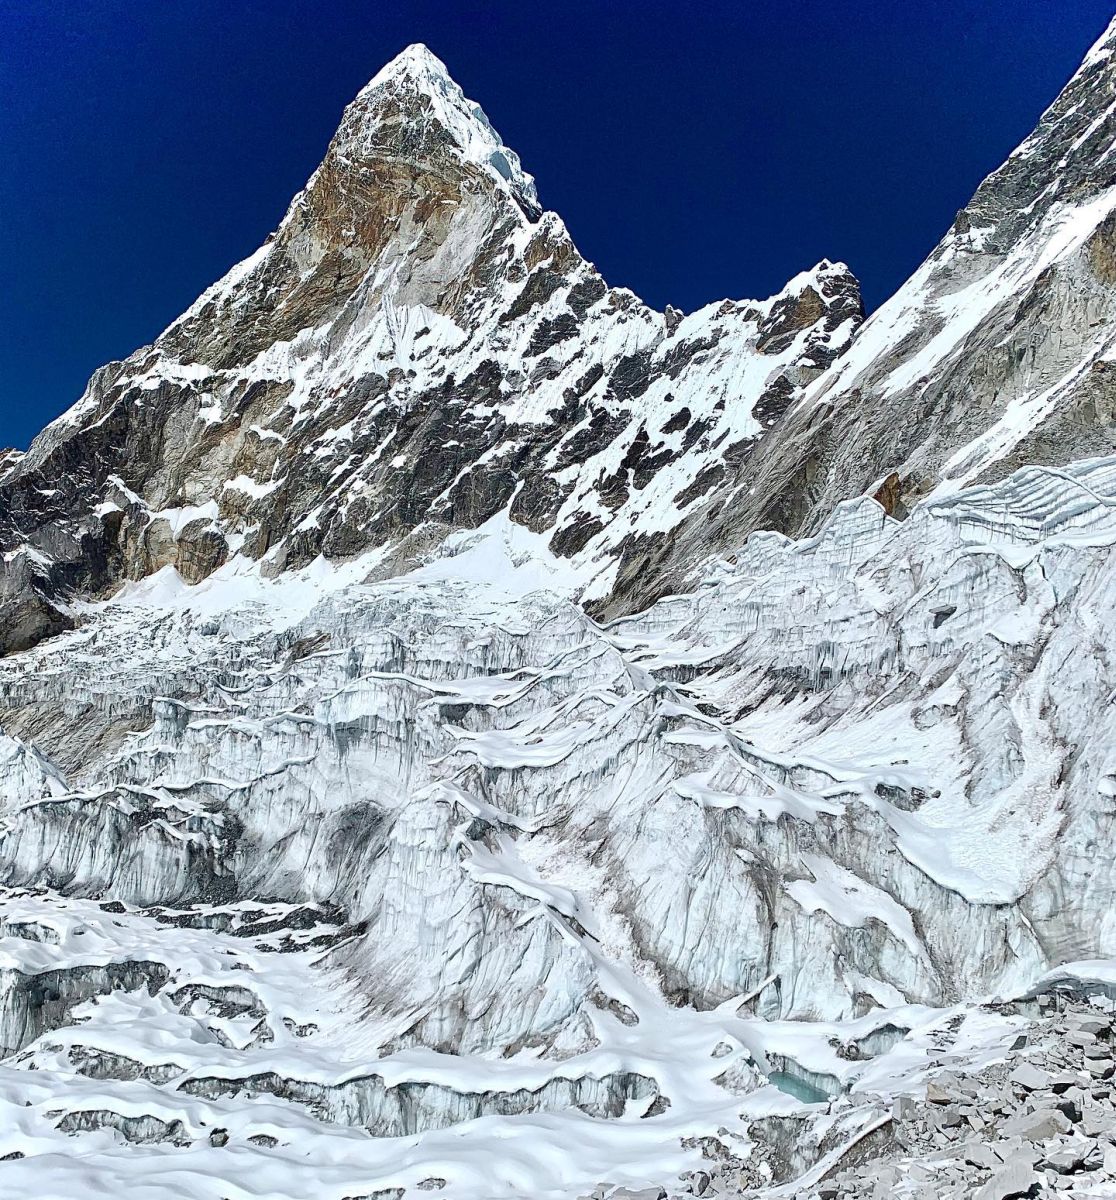 Ama Dablam above Nare Glacier